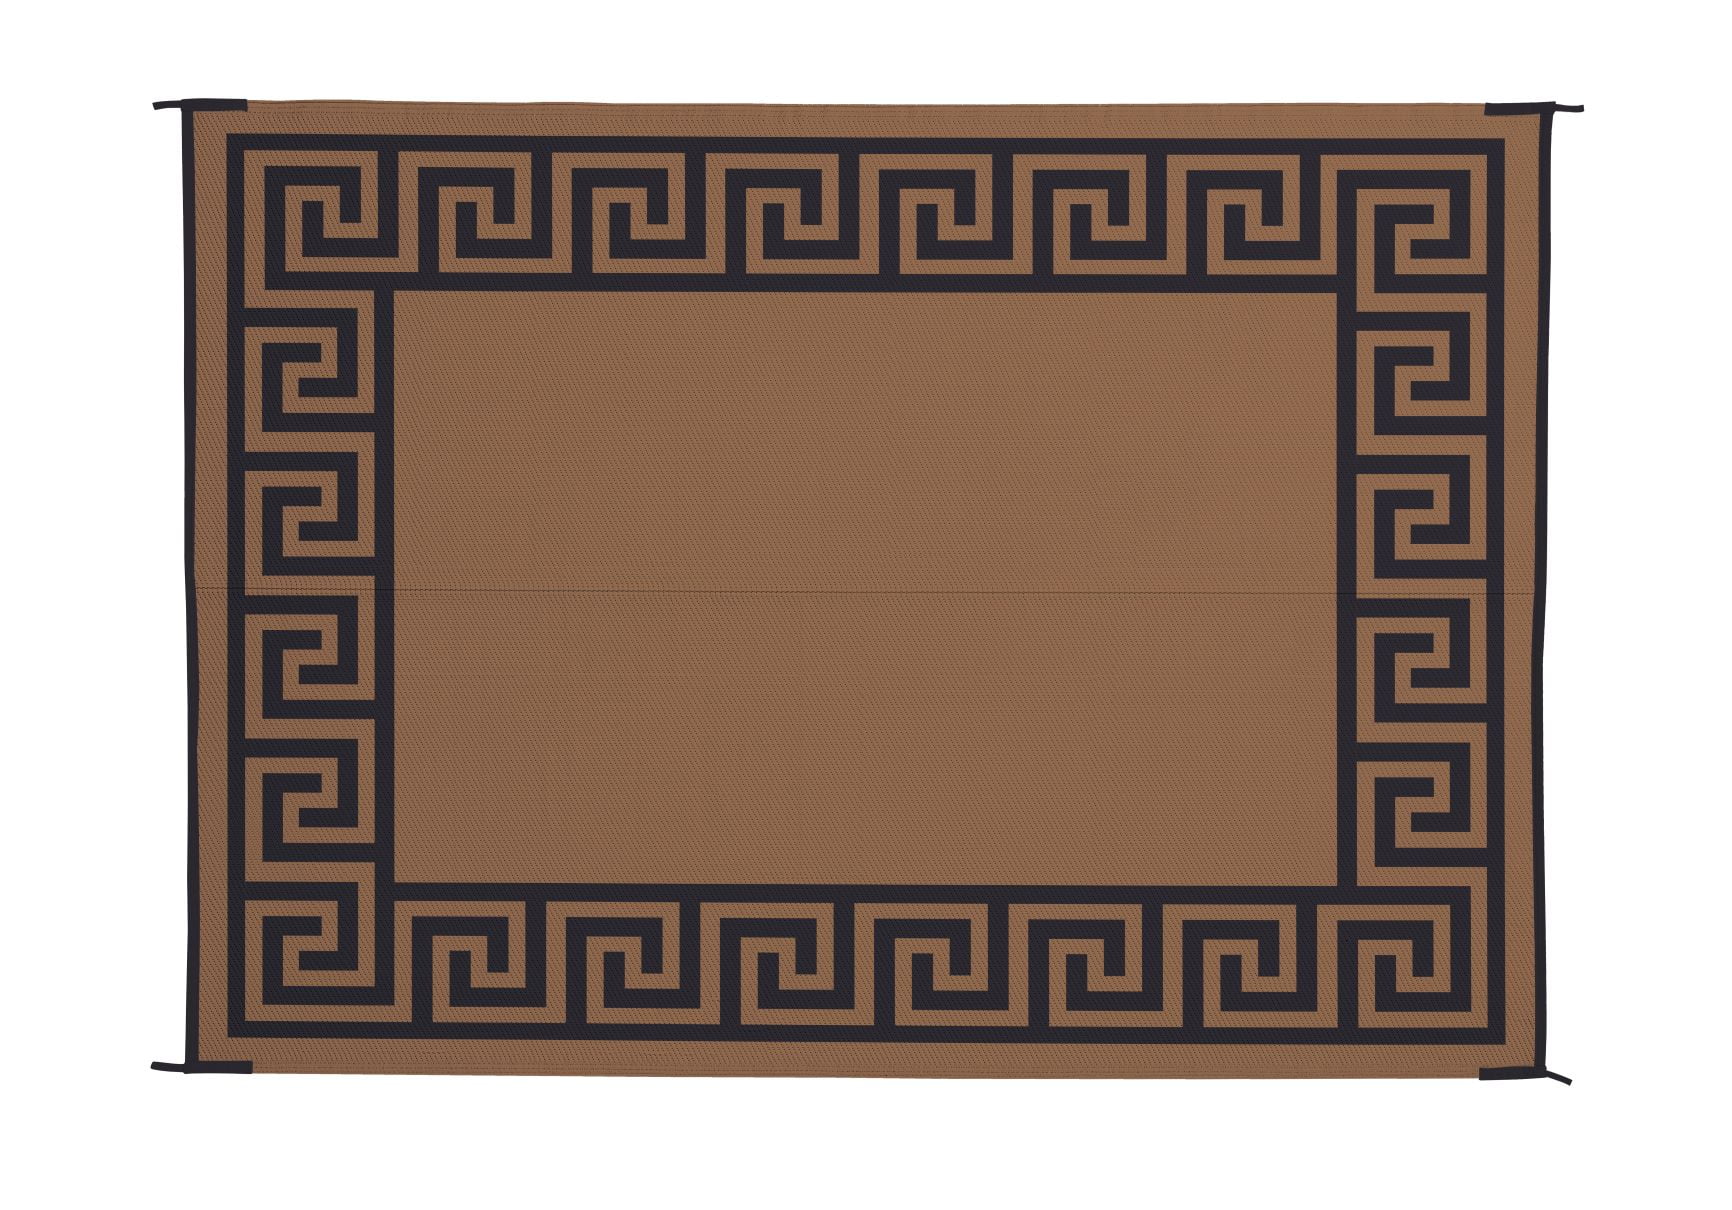 CYRUS Art Mat, Brown Vinyl Protective Mat, Persian/turkish Design, Waterproof  Floor Mat, Vinyl Area Rug, Home Ideas, Bathroom, Kitchen 